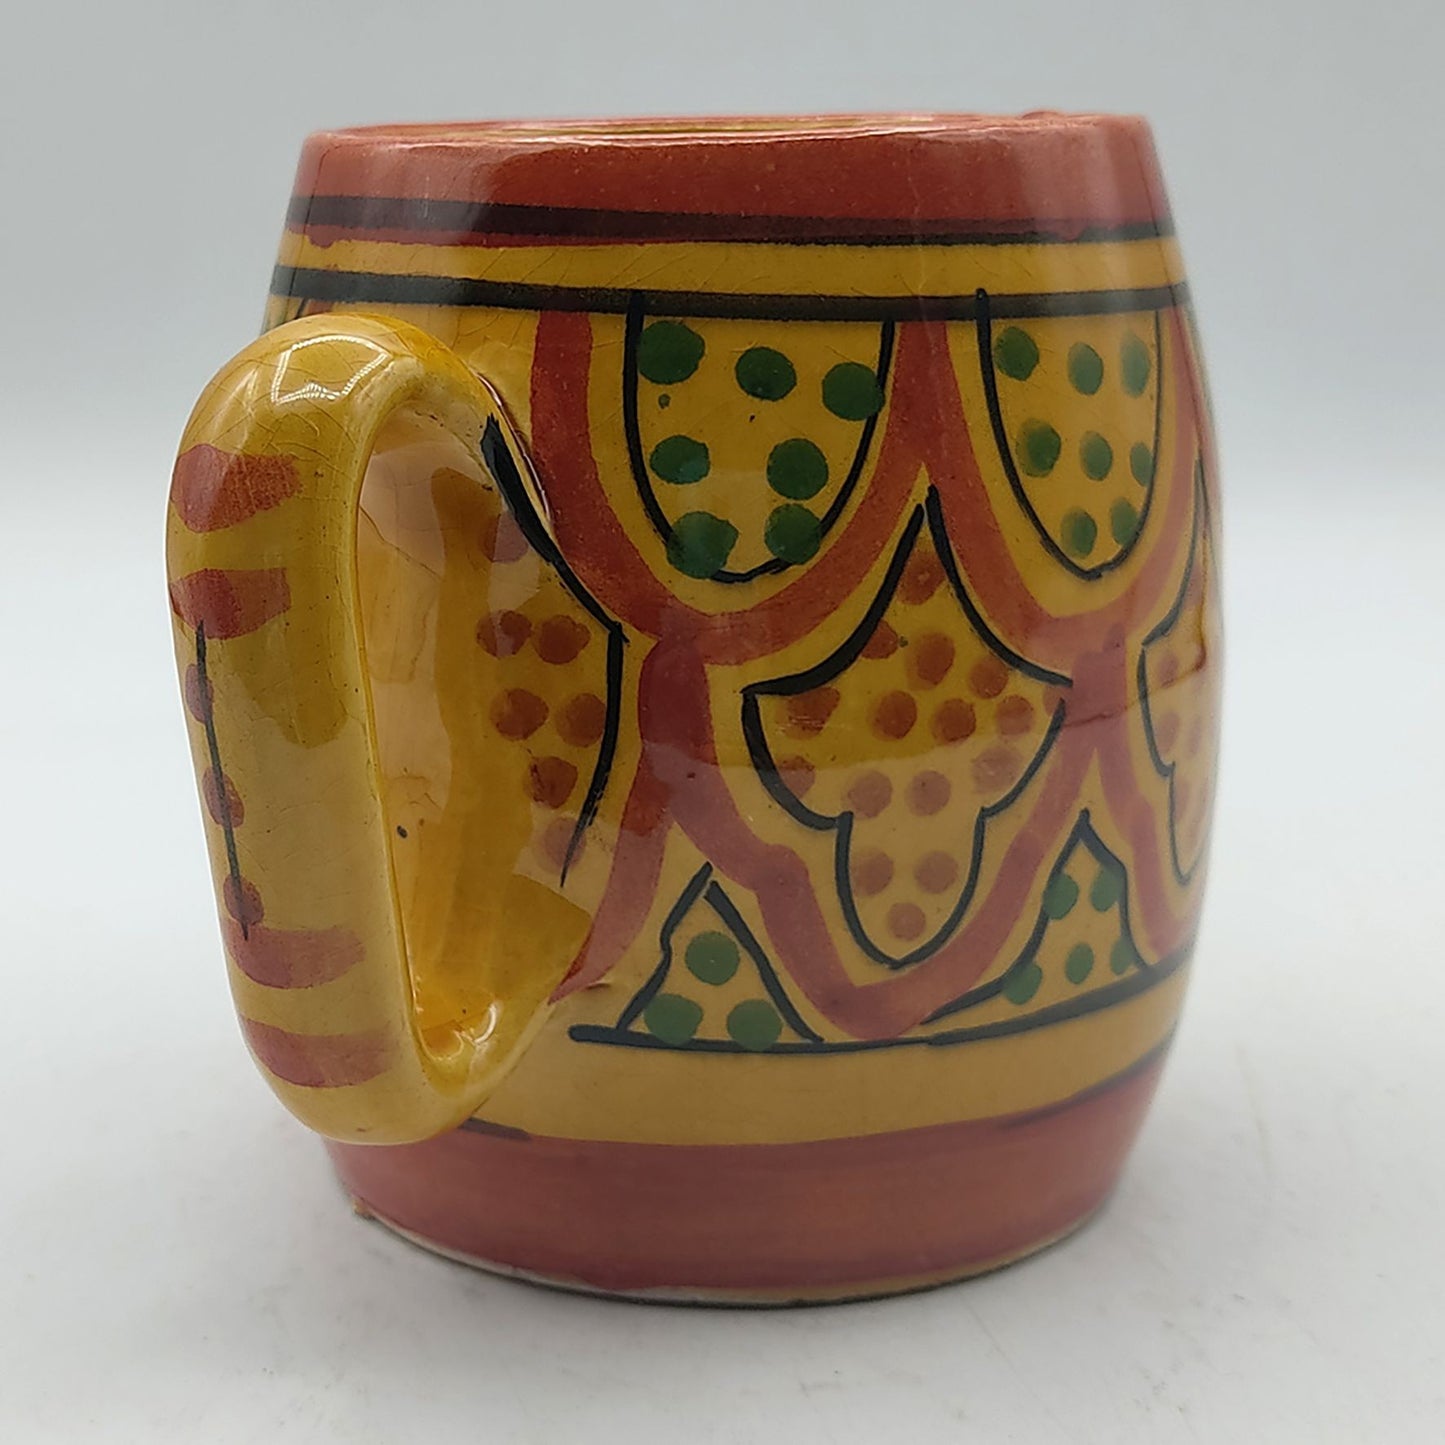 Arredamento Etnico Bicchiere Boccale Ceramica Terre Cuite Marocchino 0405211043